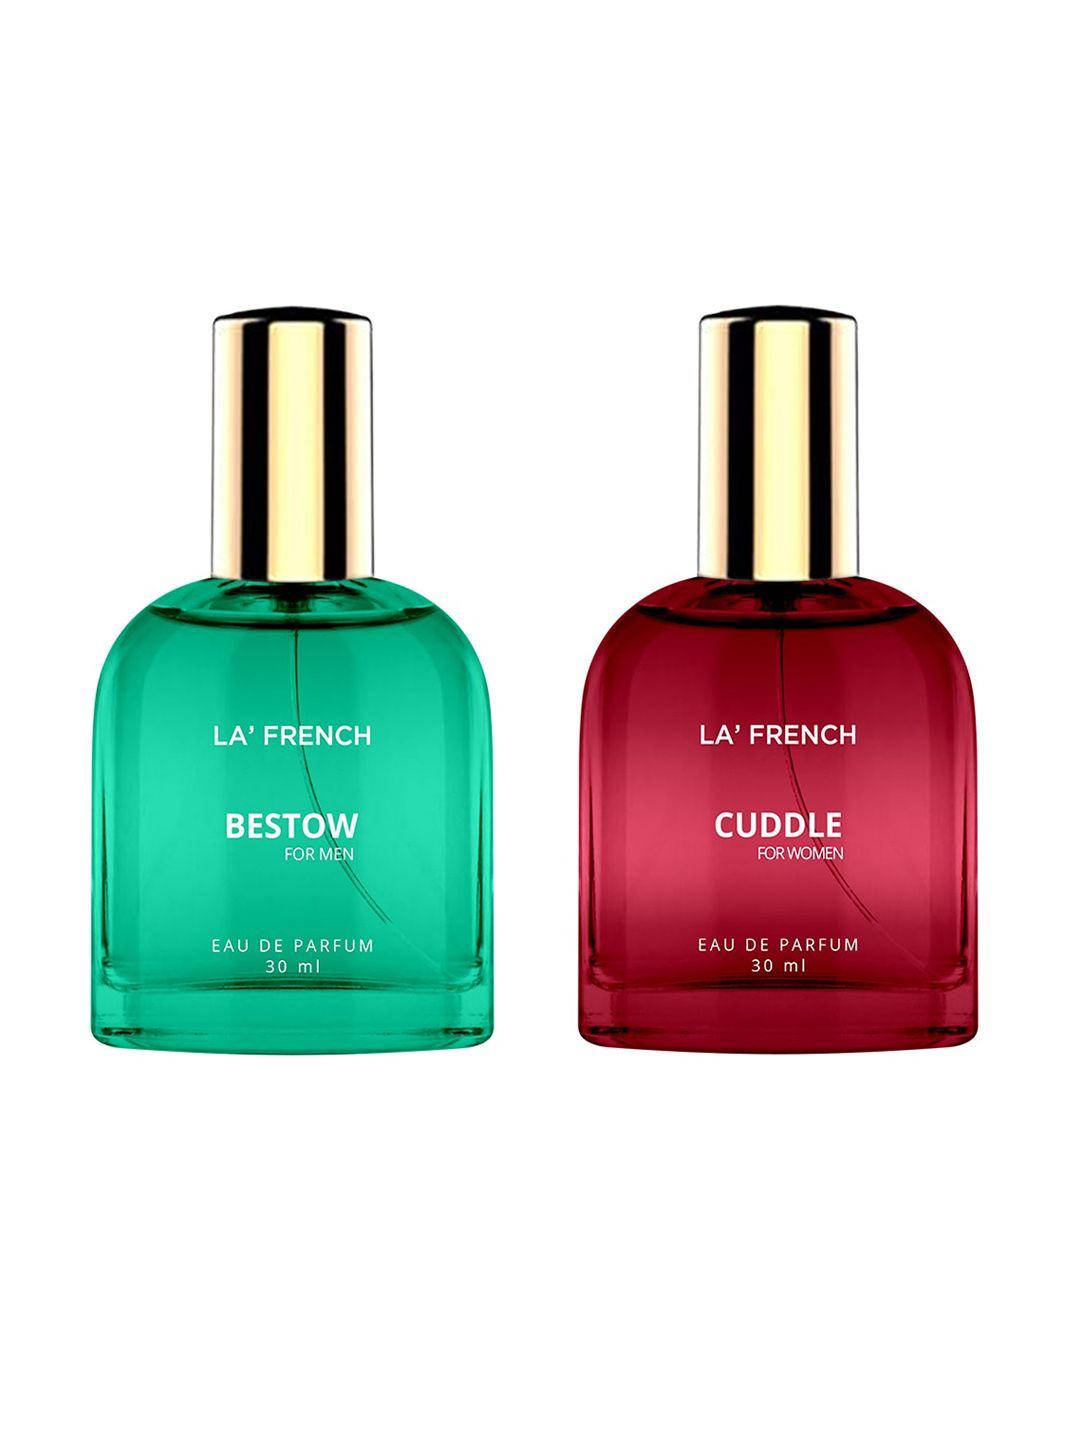 la french set of 2 eau de parfum 30ml each - bestow & cuddle